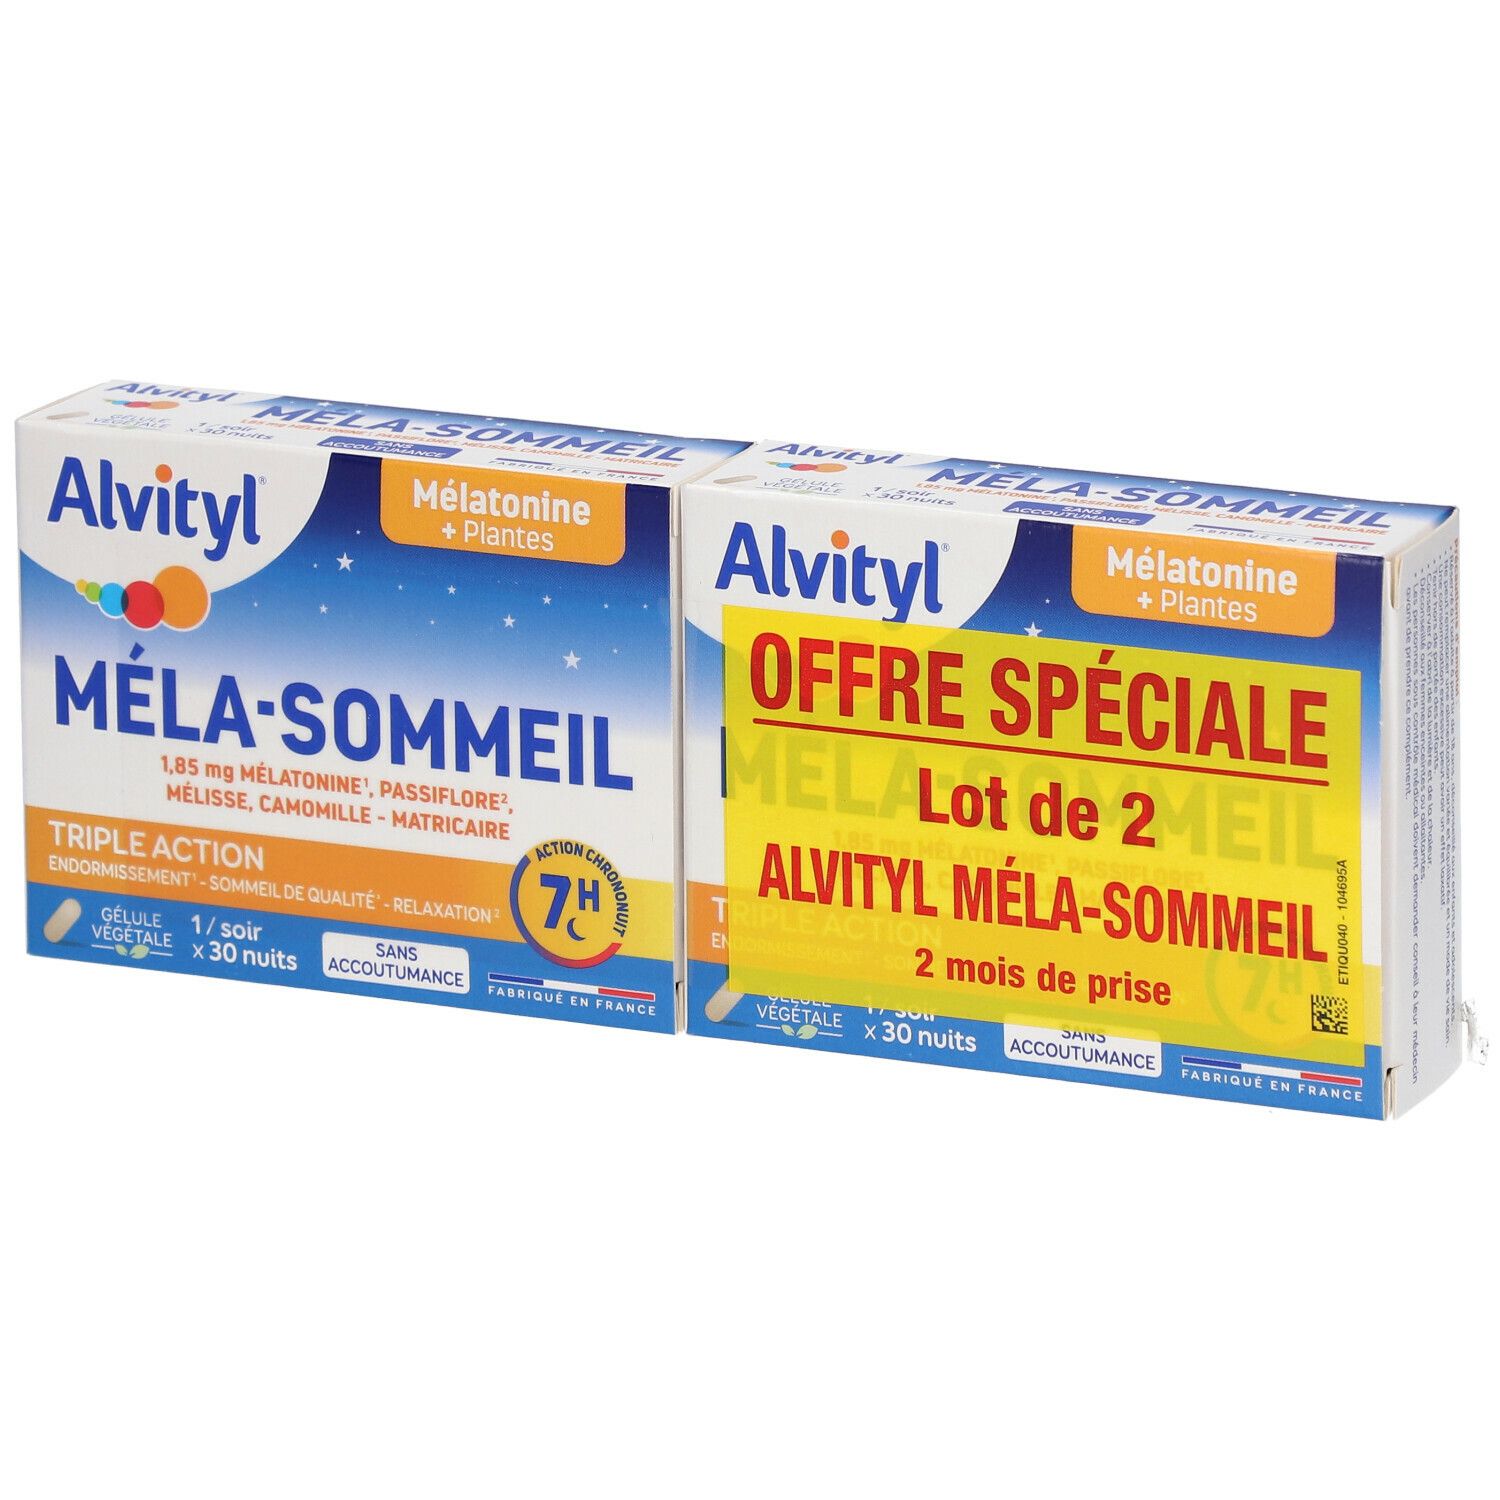 Alvityl® Mela-Sommeil lib